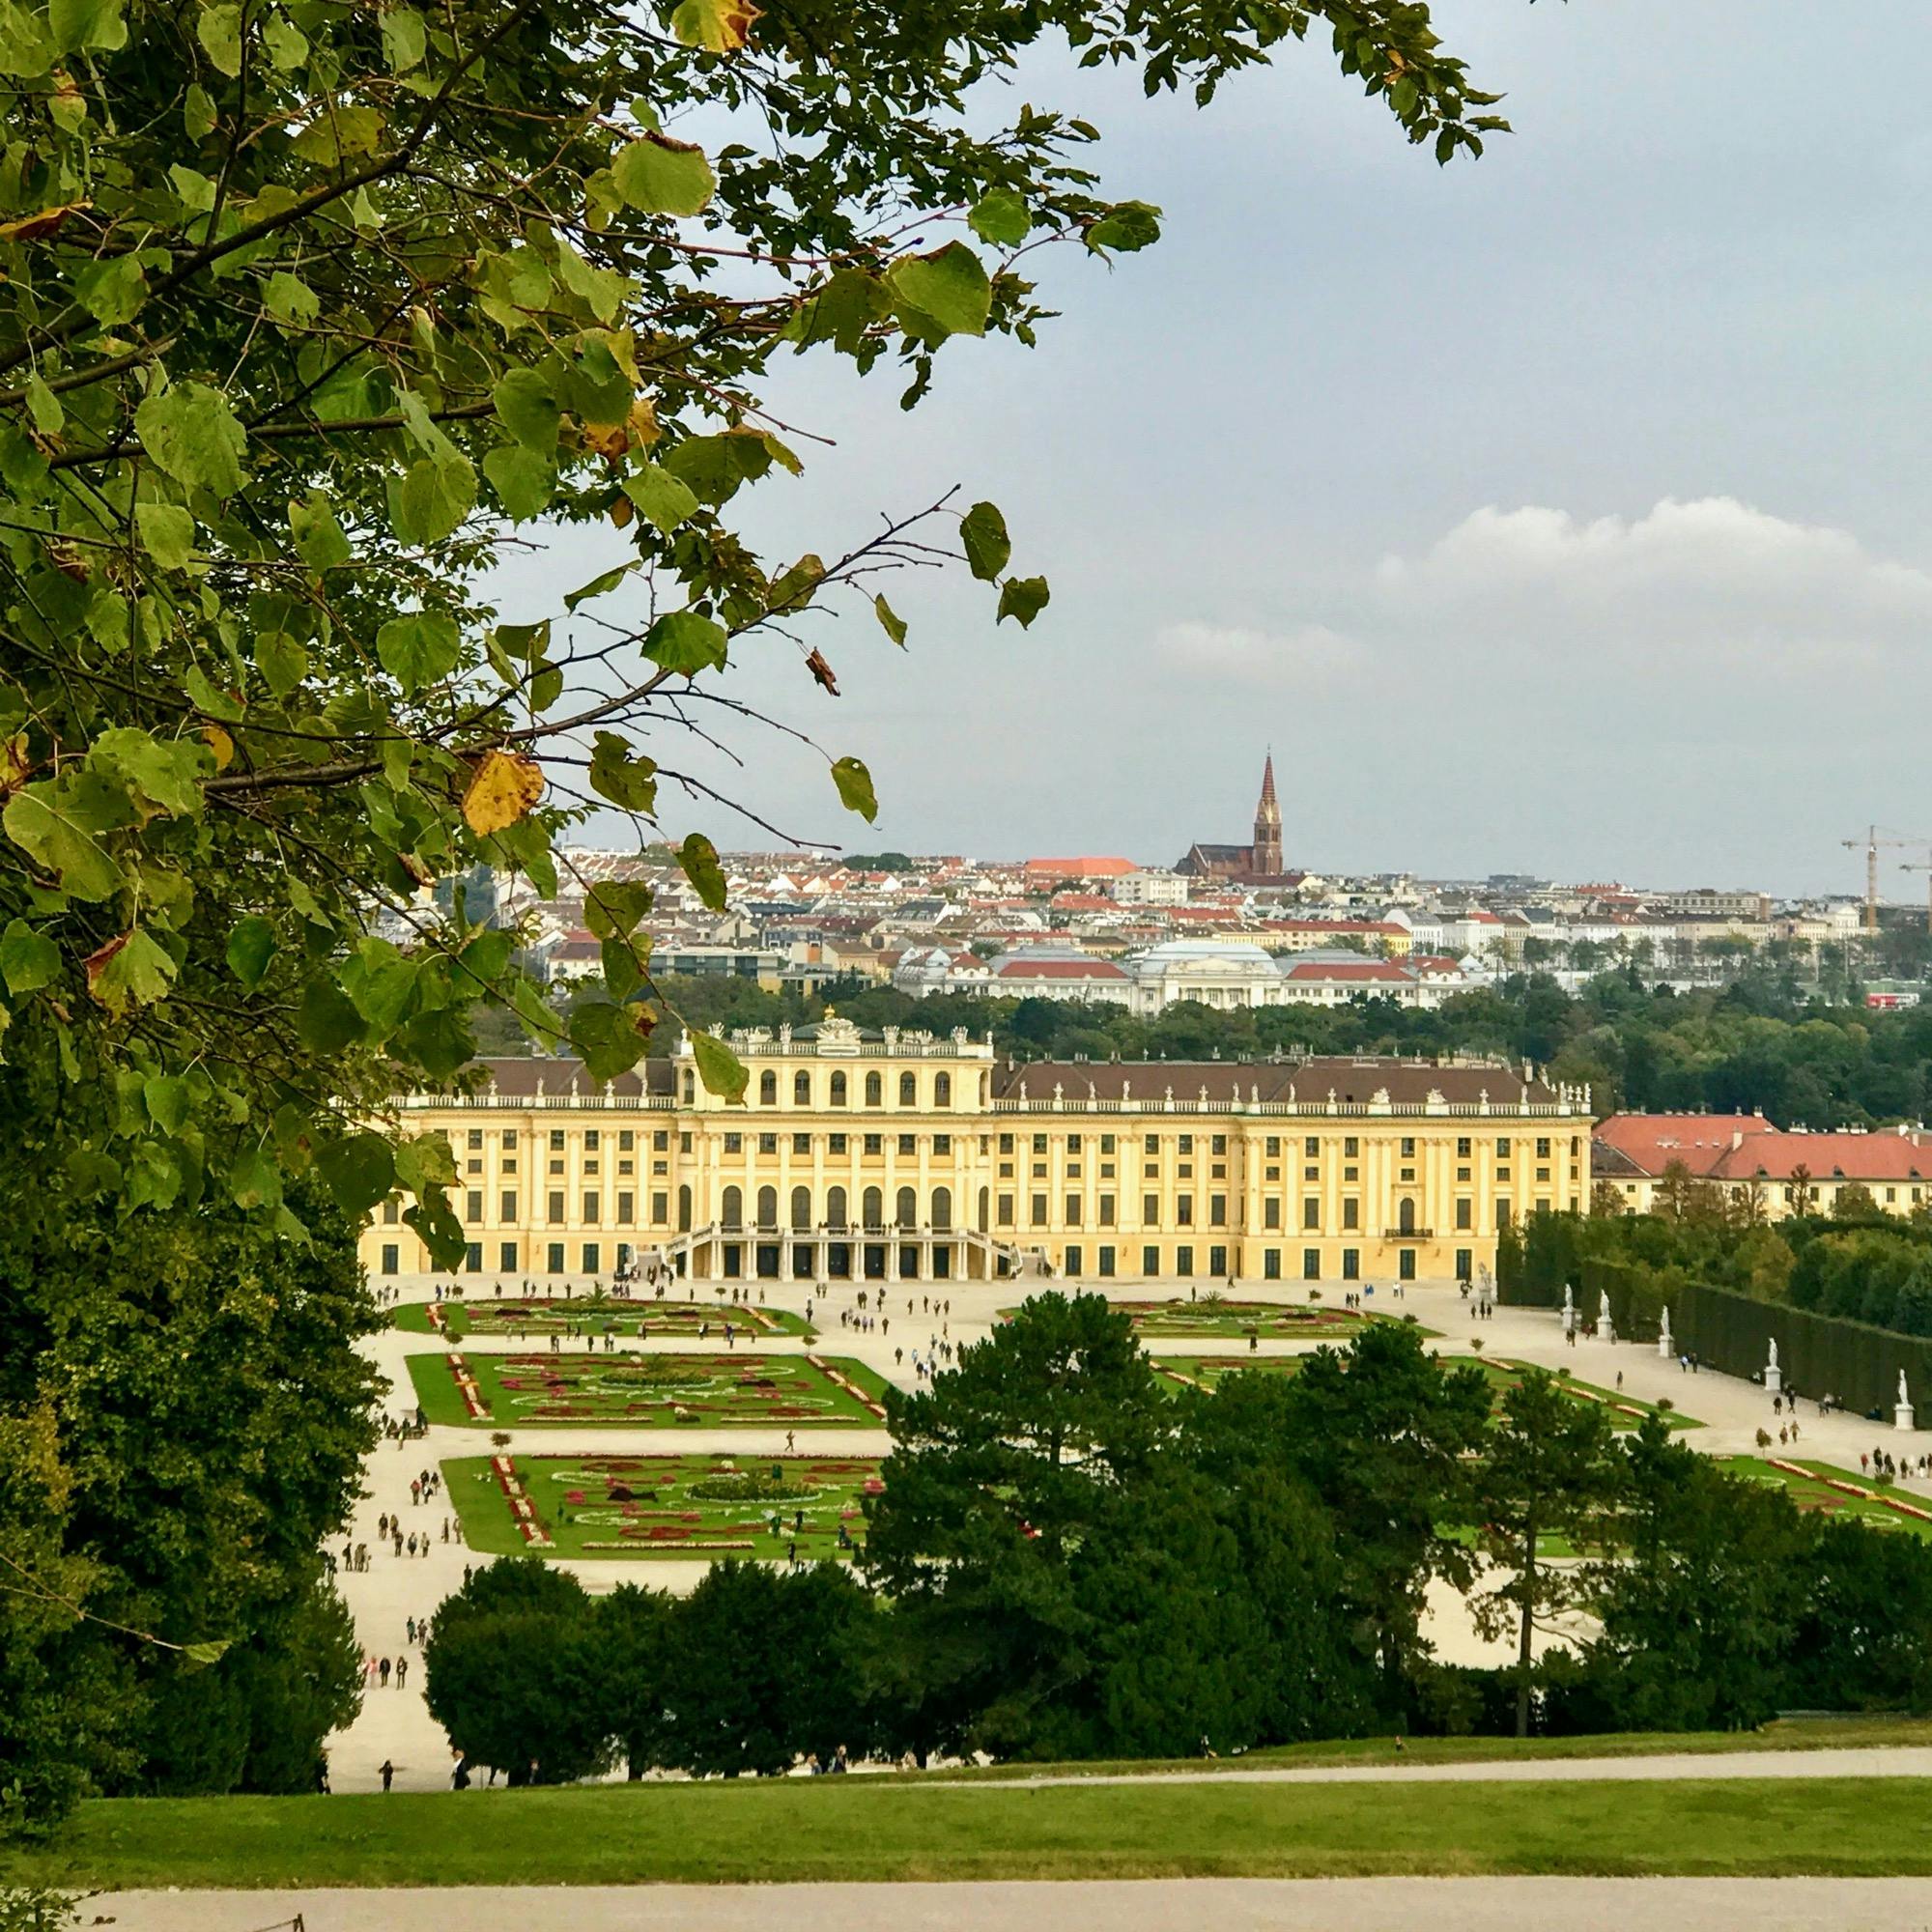 シェーンブルン宮殿 Schonbrunn Palace の投稿写真 感想 みどころ オーストリアシェーンブルン宮殿ハプスブルク王朝歴代君主の トリップノート